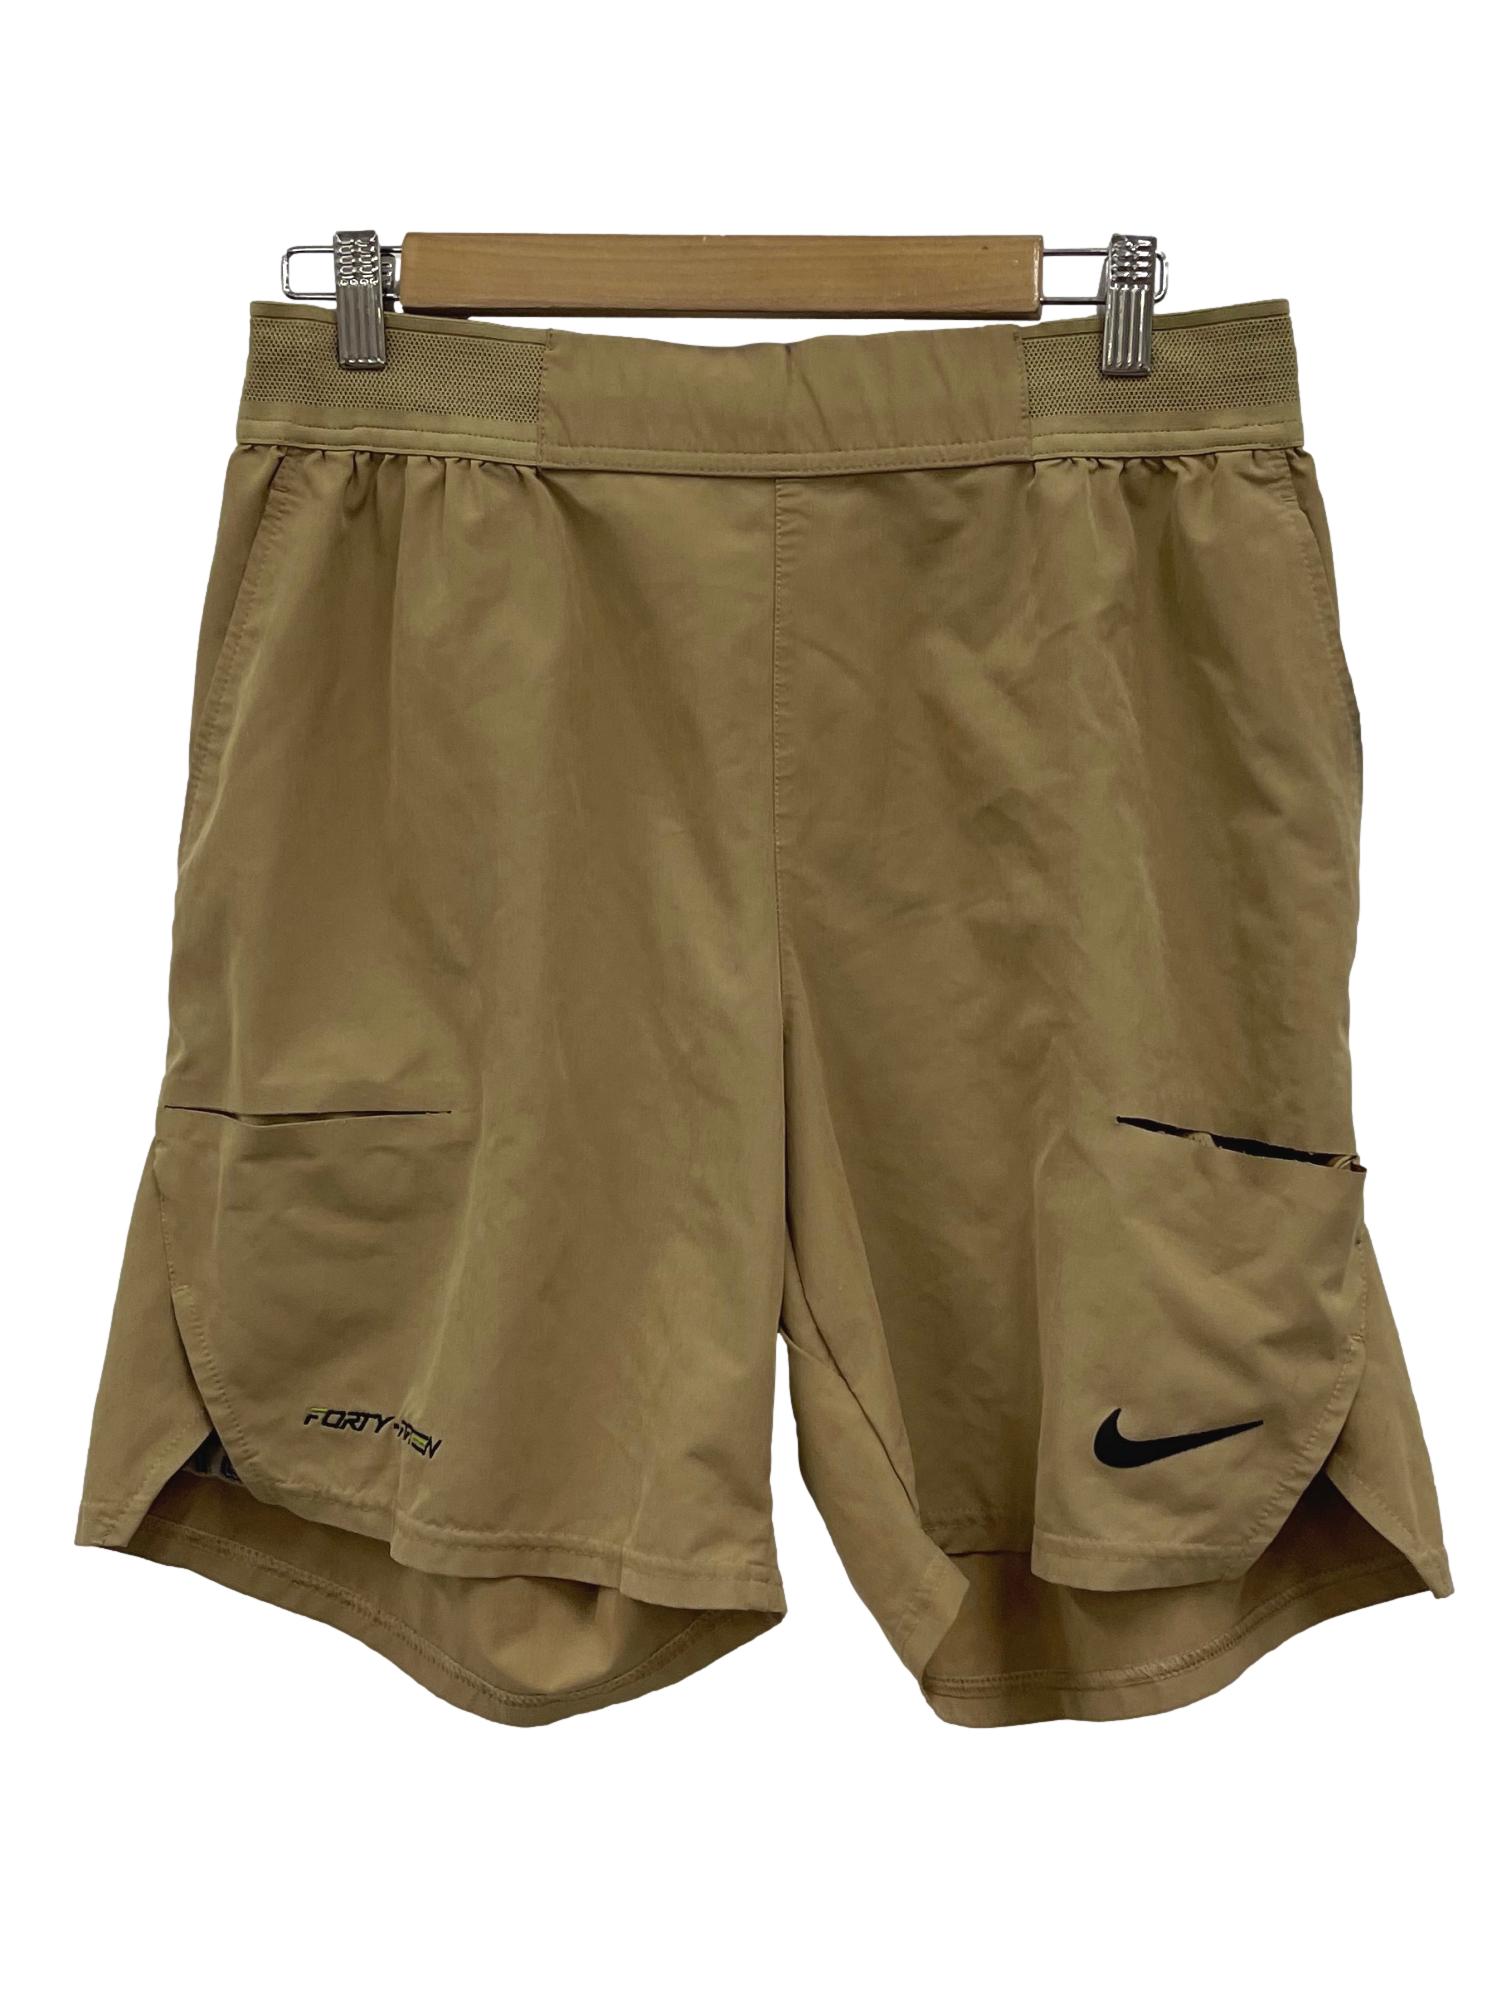 Khaki Brown Fit Shorts